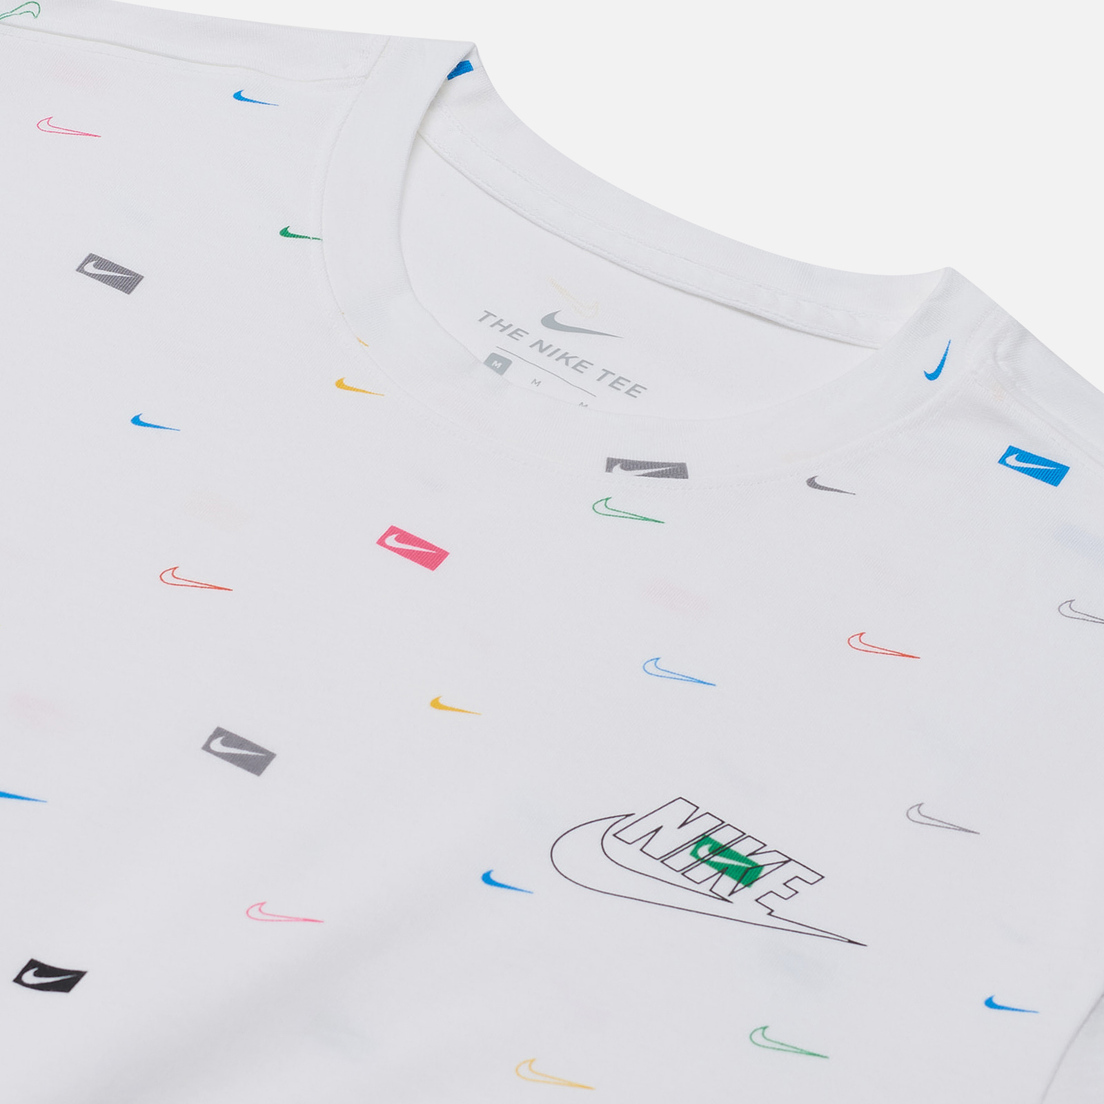 Nike Мужская футболка Mlti-Color All Over Print